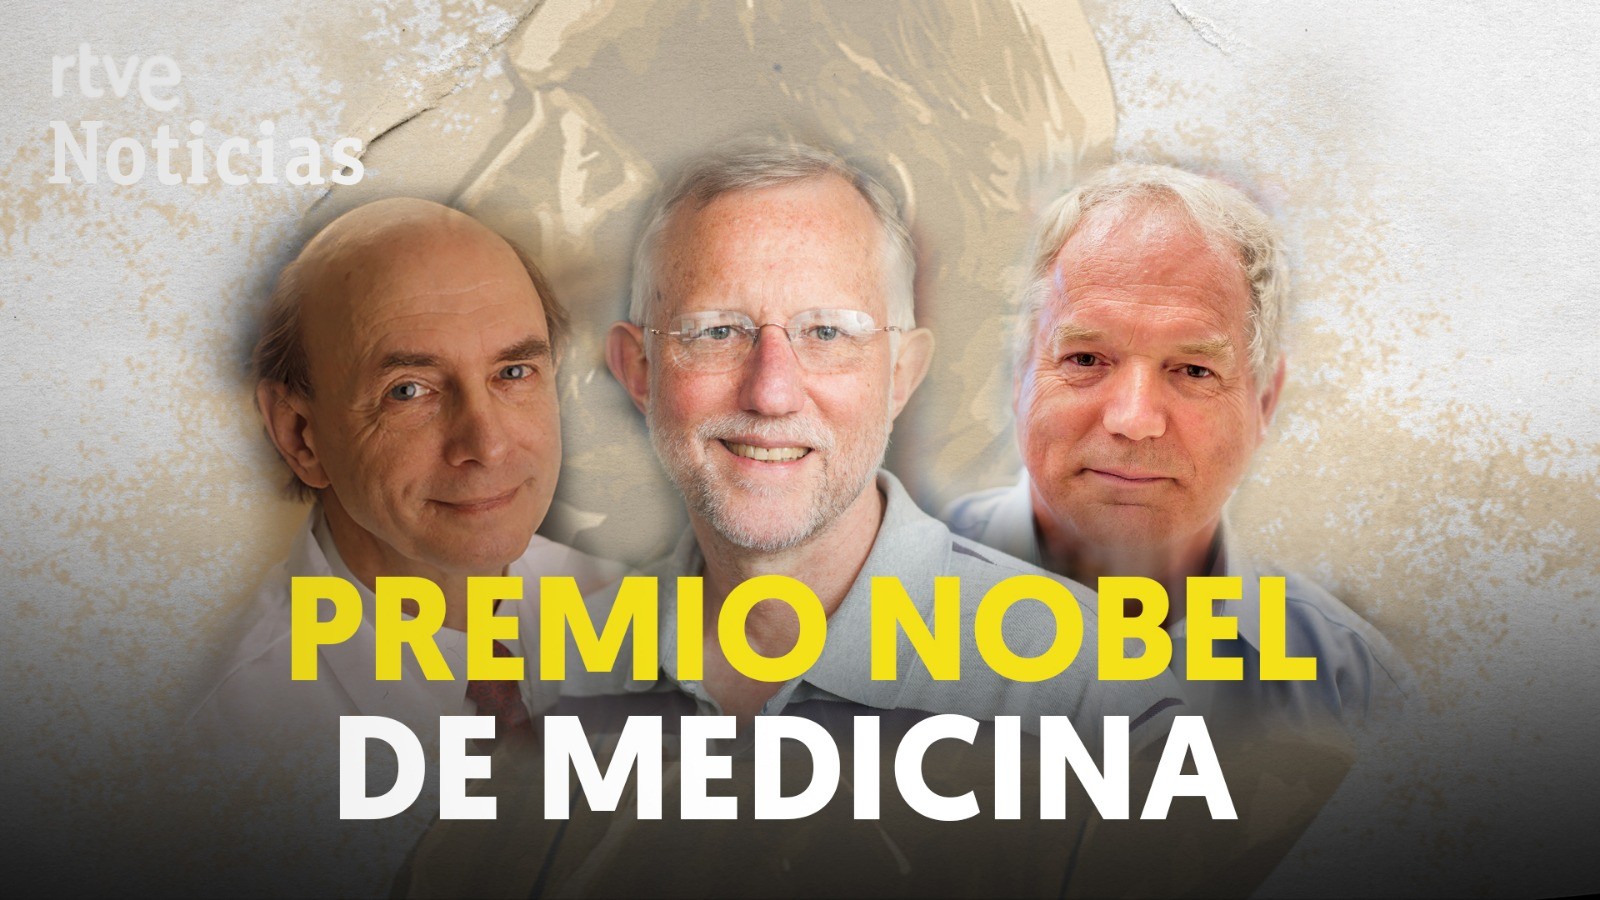 Ir al Video Los descubridores del virus de la hepatitis C ganan el Premio Nobel de Medicina 2020